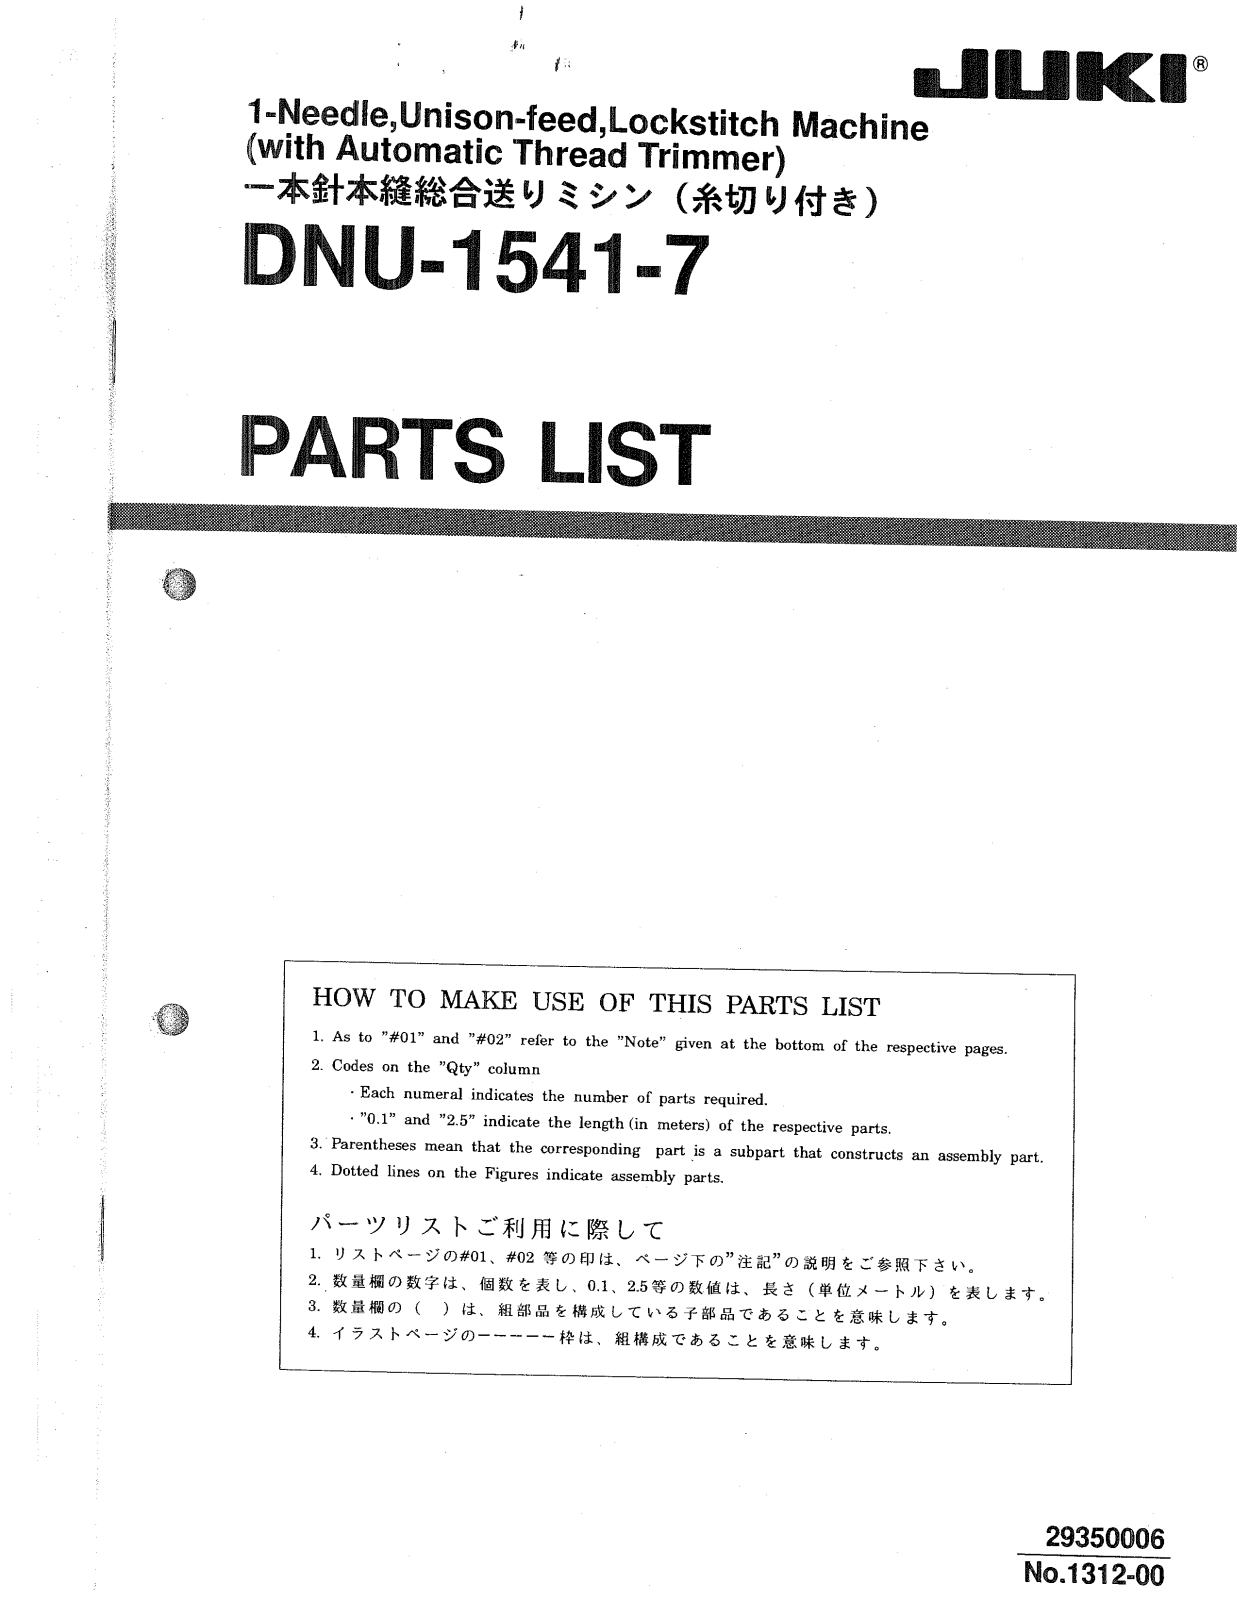 Juki DNU-1541-7 Parts List